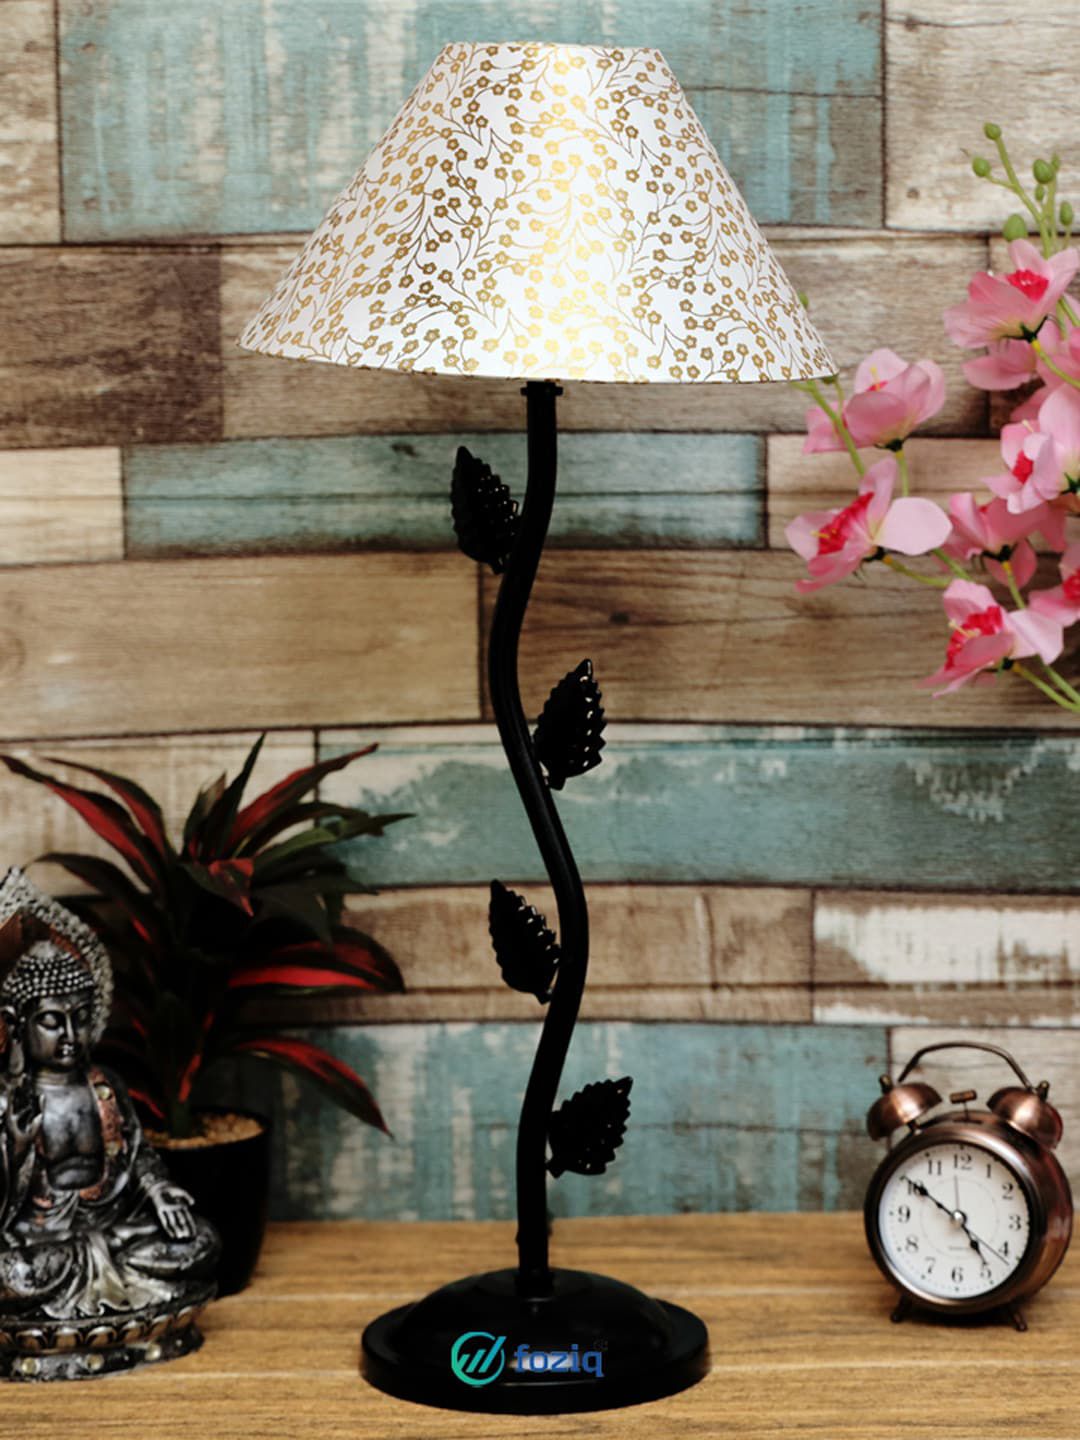 foziq White & Black Printed Table Lamp Price in India